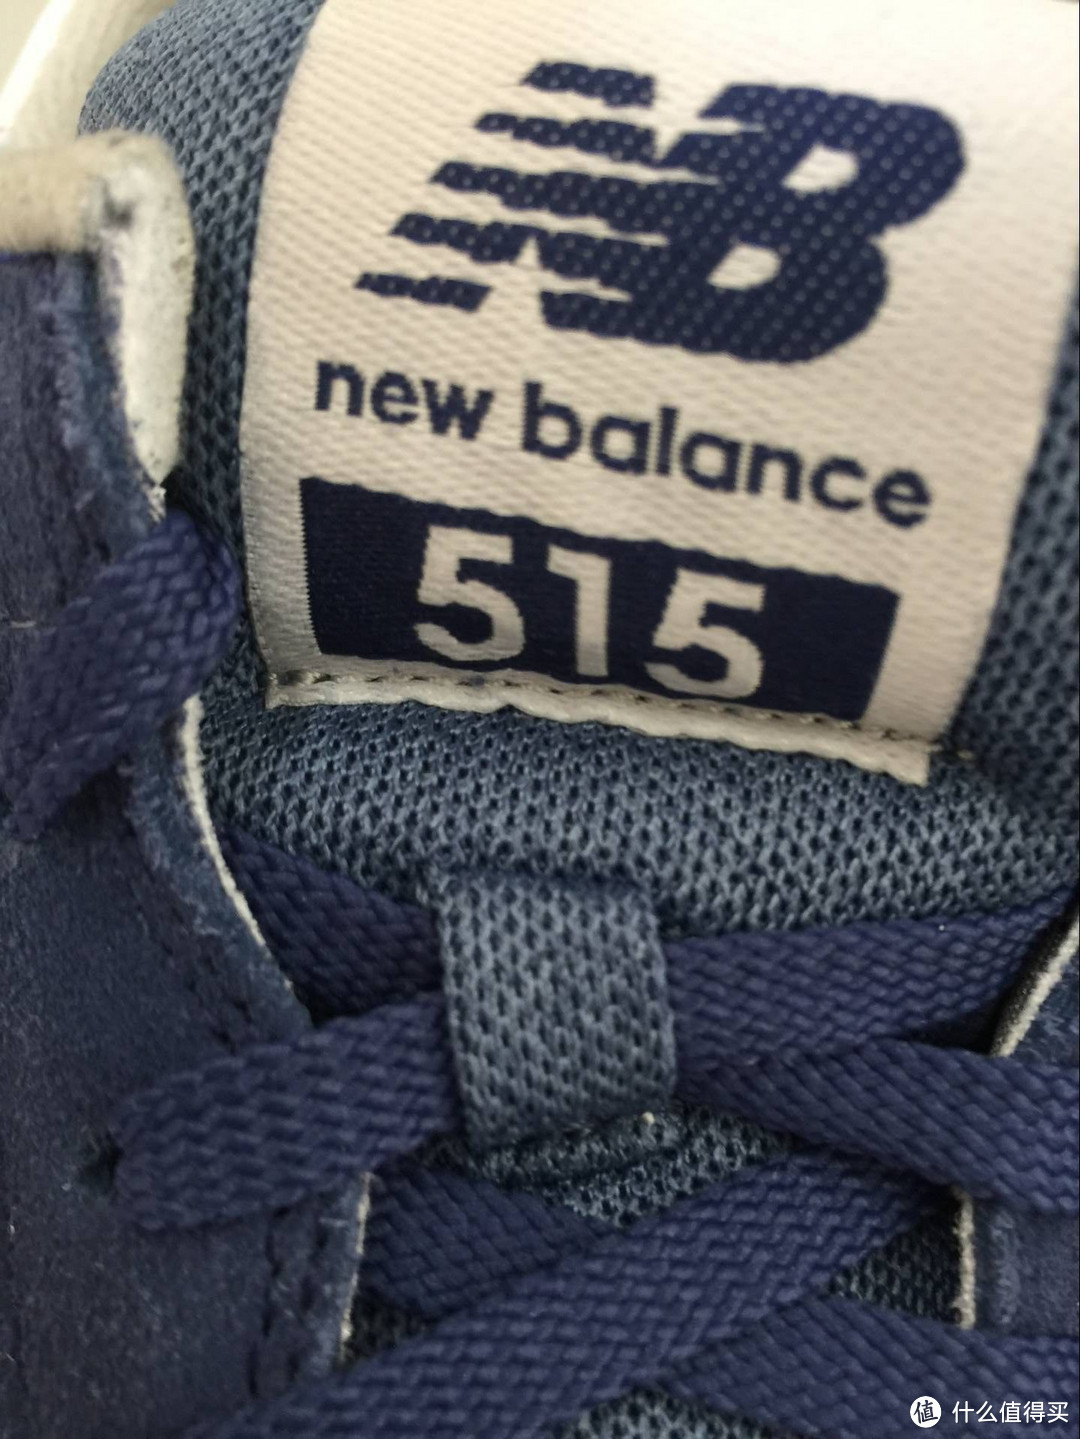 NB官网购入：给老爸的买的一双软底鞋：New Balance 新百伦 515 男鞋